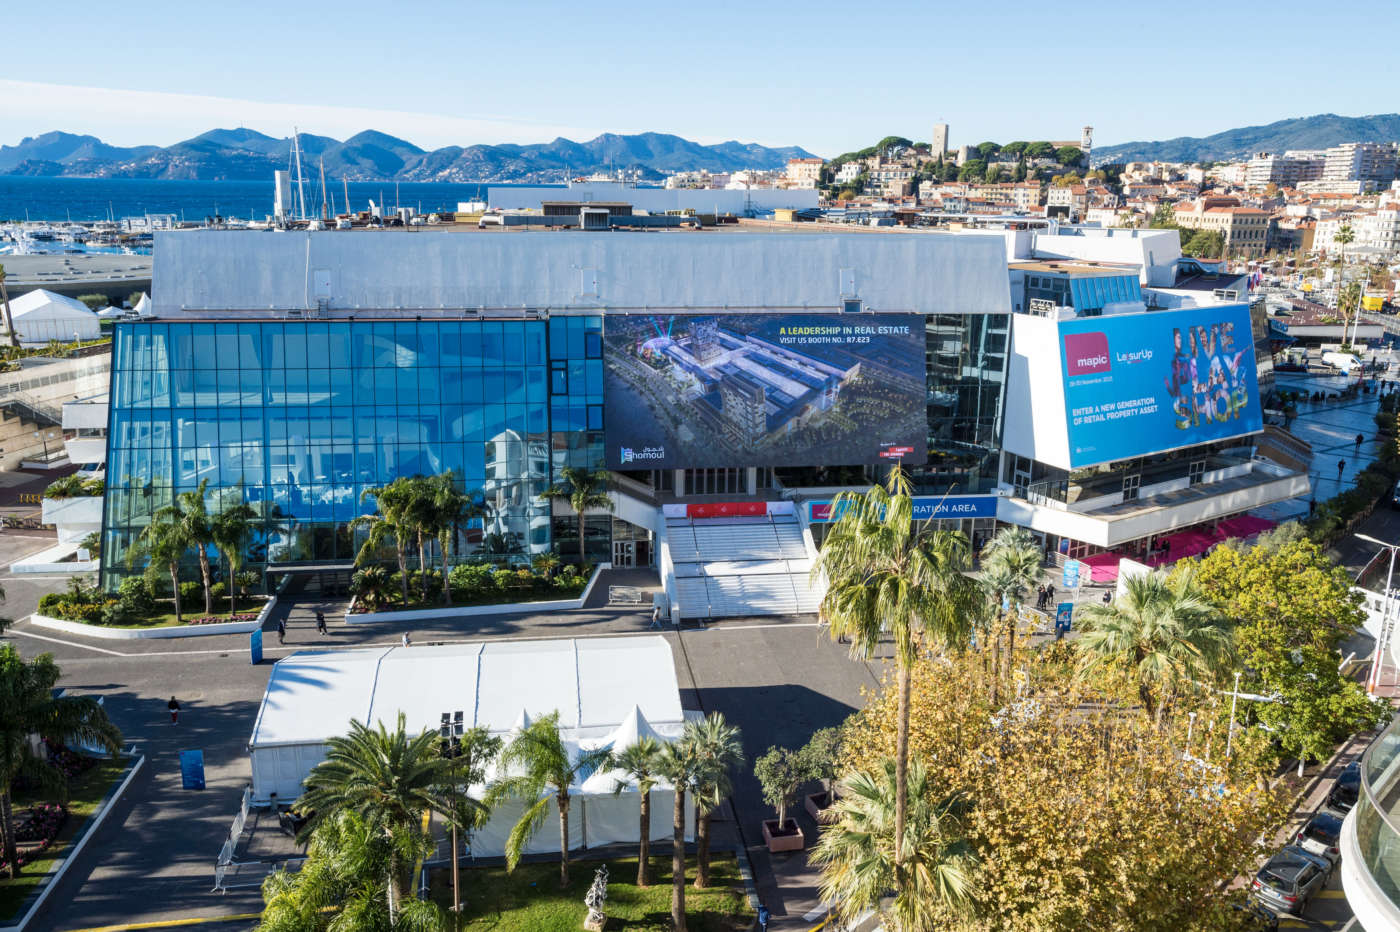 Mapic Cannes, novità della fiera e prospettive dell'immobiliare